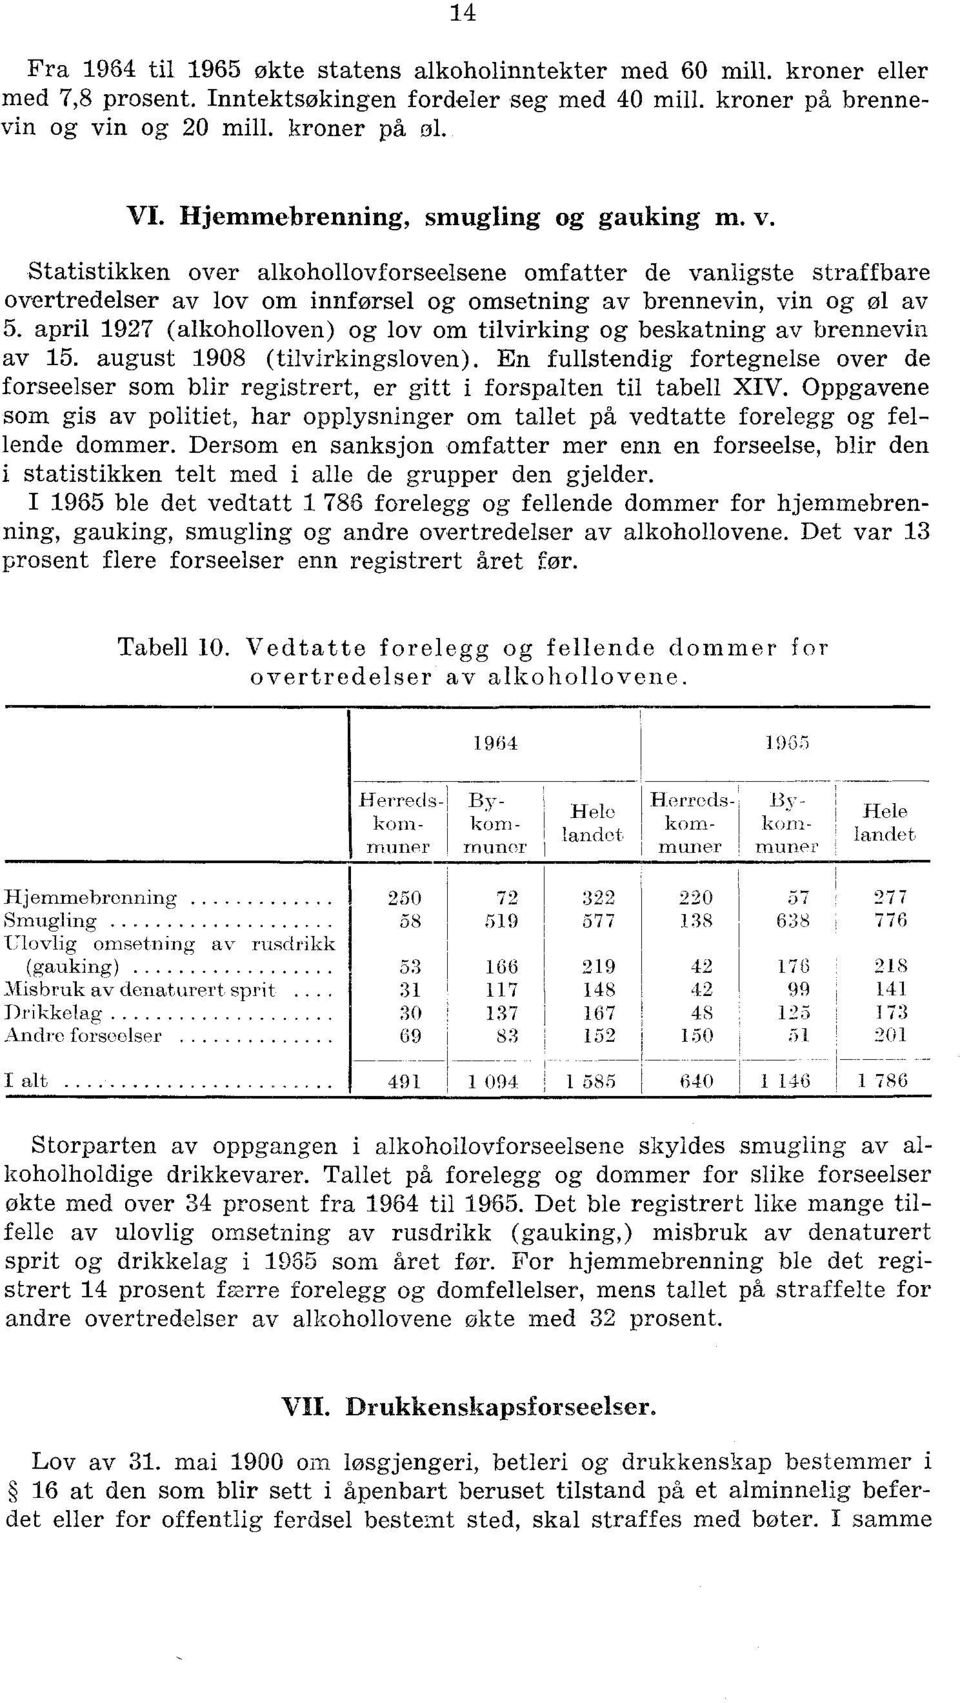 april 1927 (alkoholloven) og lov om tilvirking og beskatning av brennevin av 15. august 1908 (tilvirkingsloven).